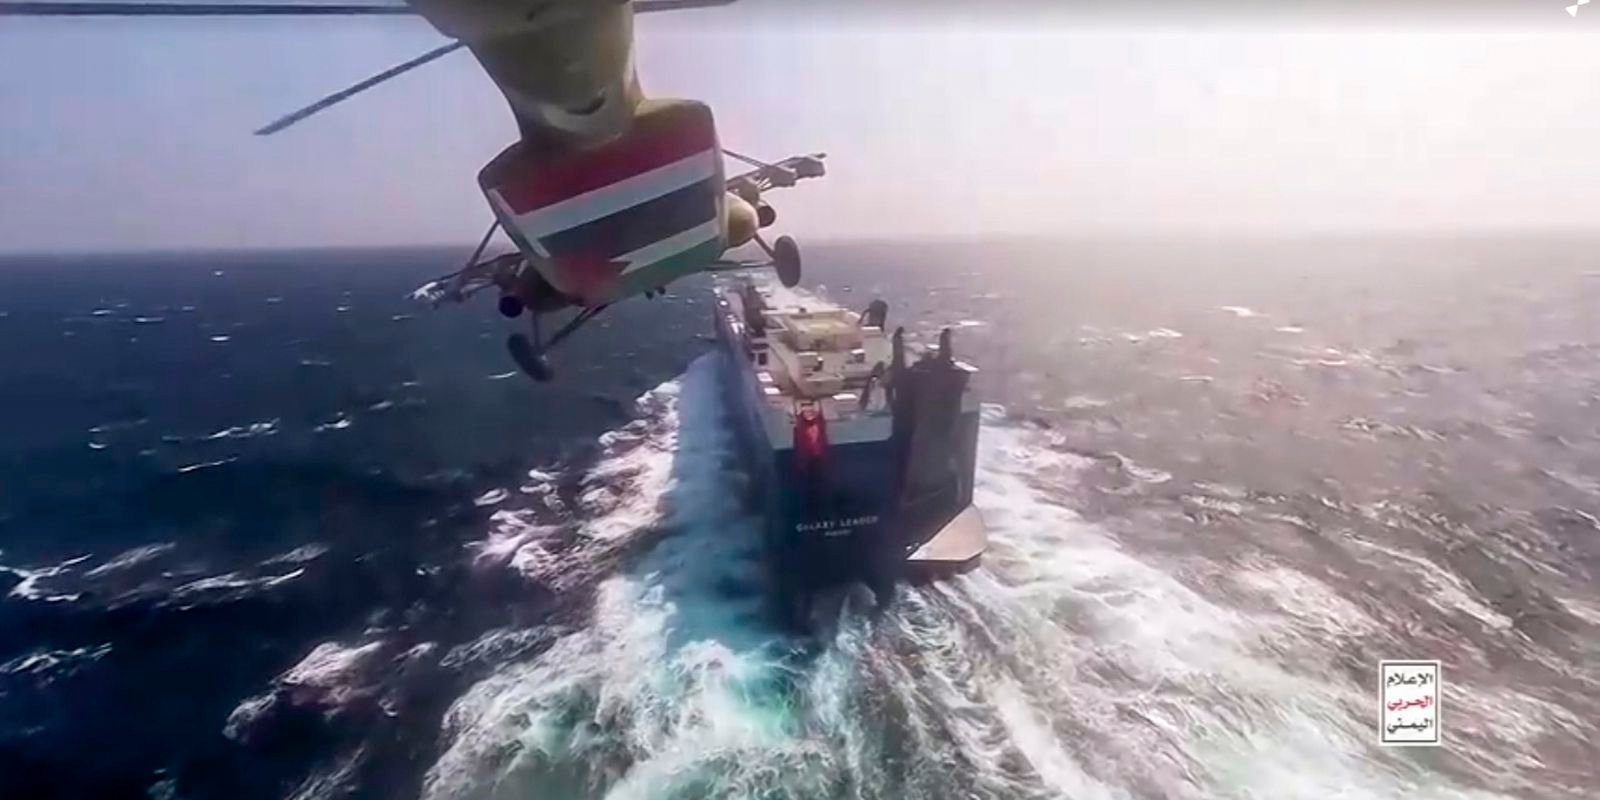 Ataques no Mar Vermelho agravam conflito no Oriente Médio